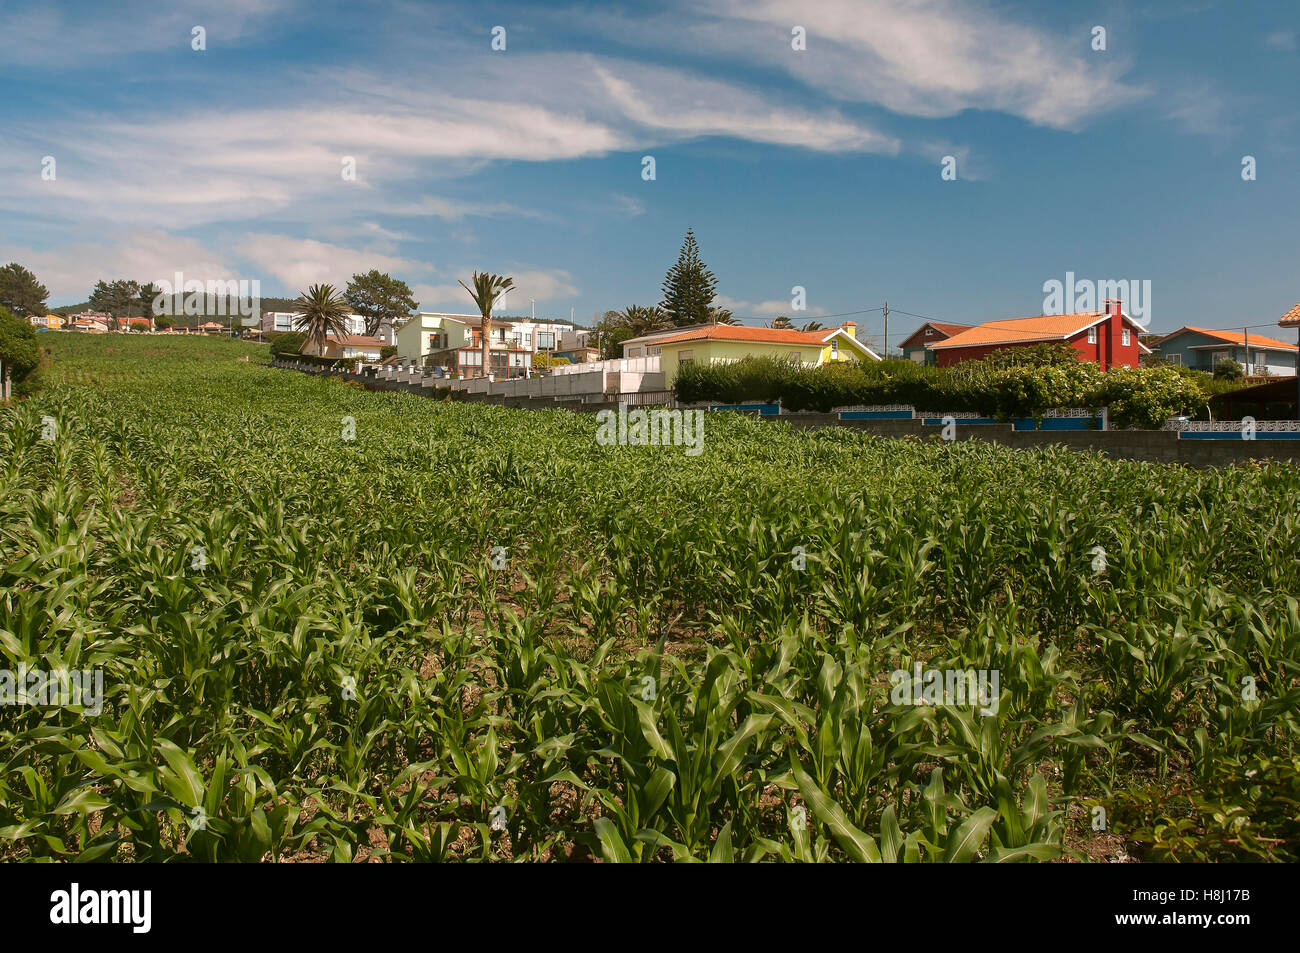 La récolte de maïs, Valdovino, Coruna province, région de la Galice, Espagne, Europe Banque D'Images